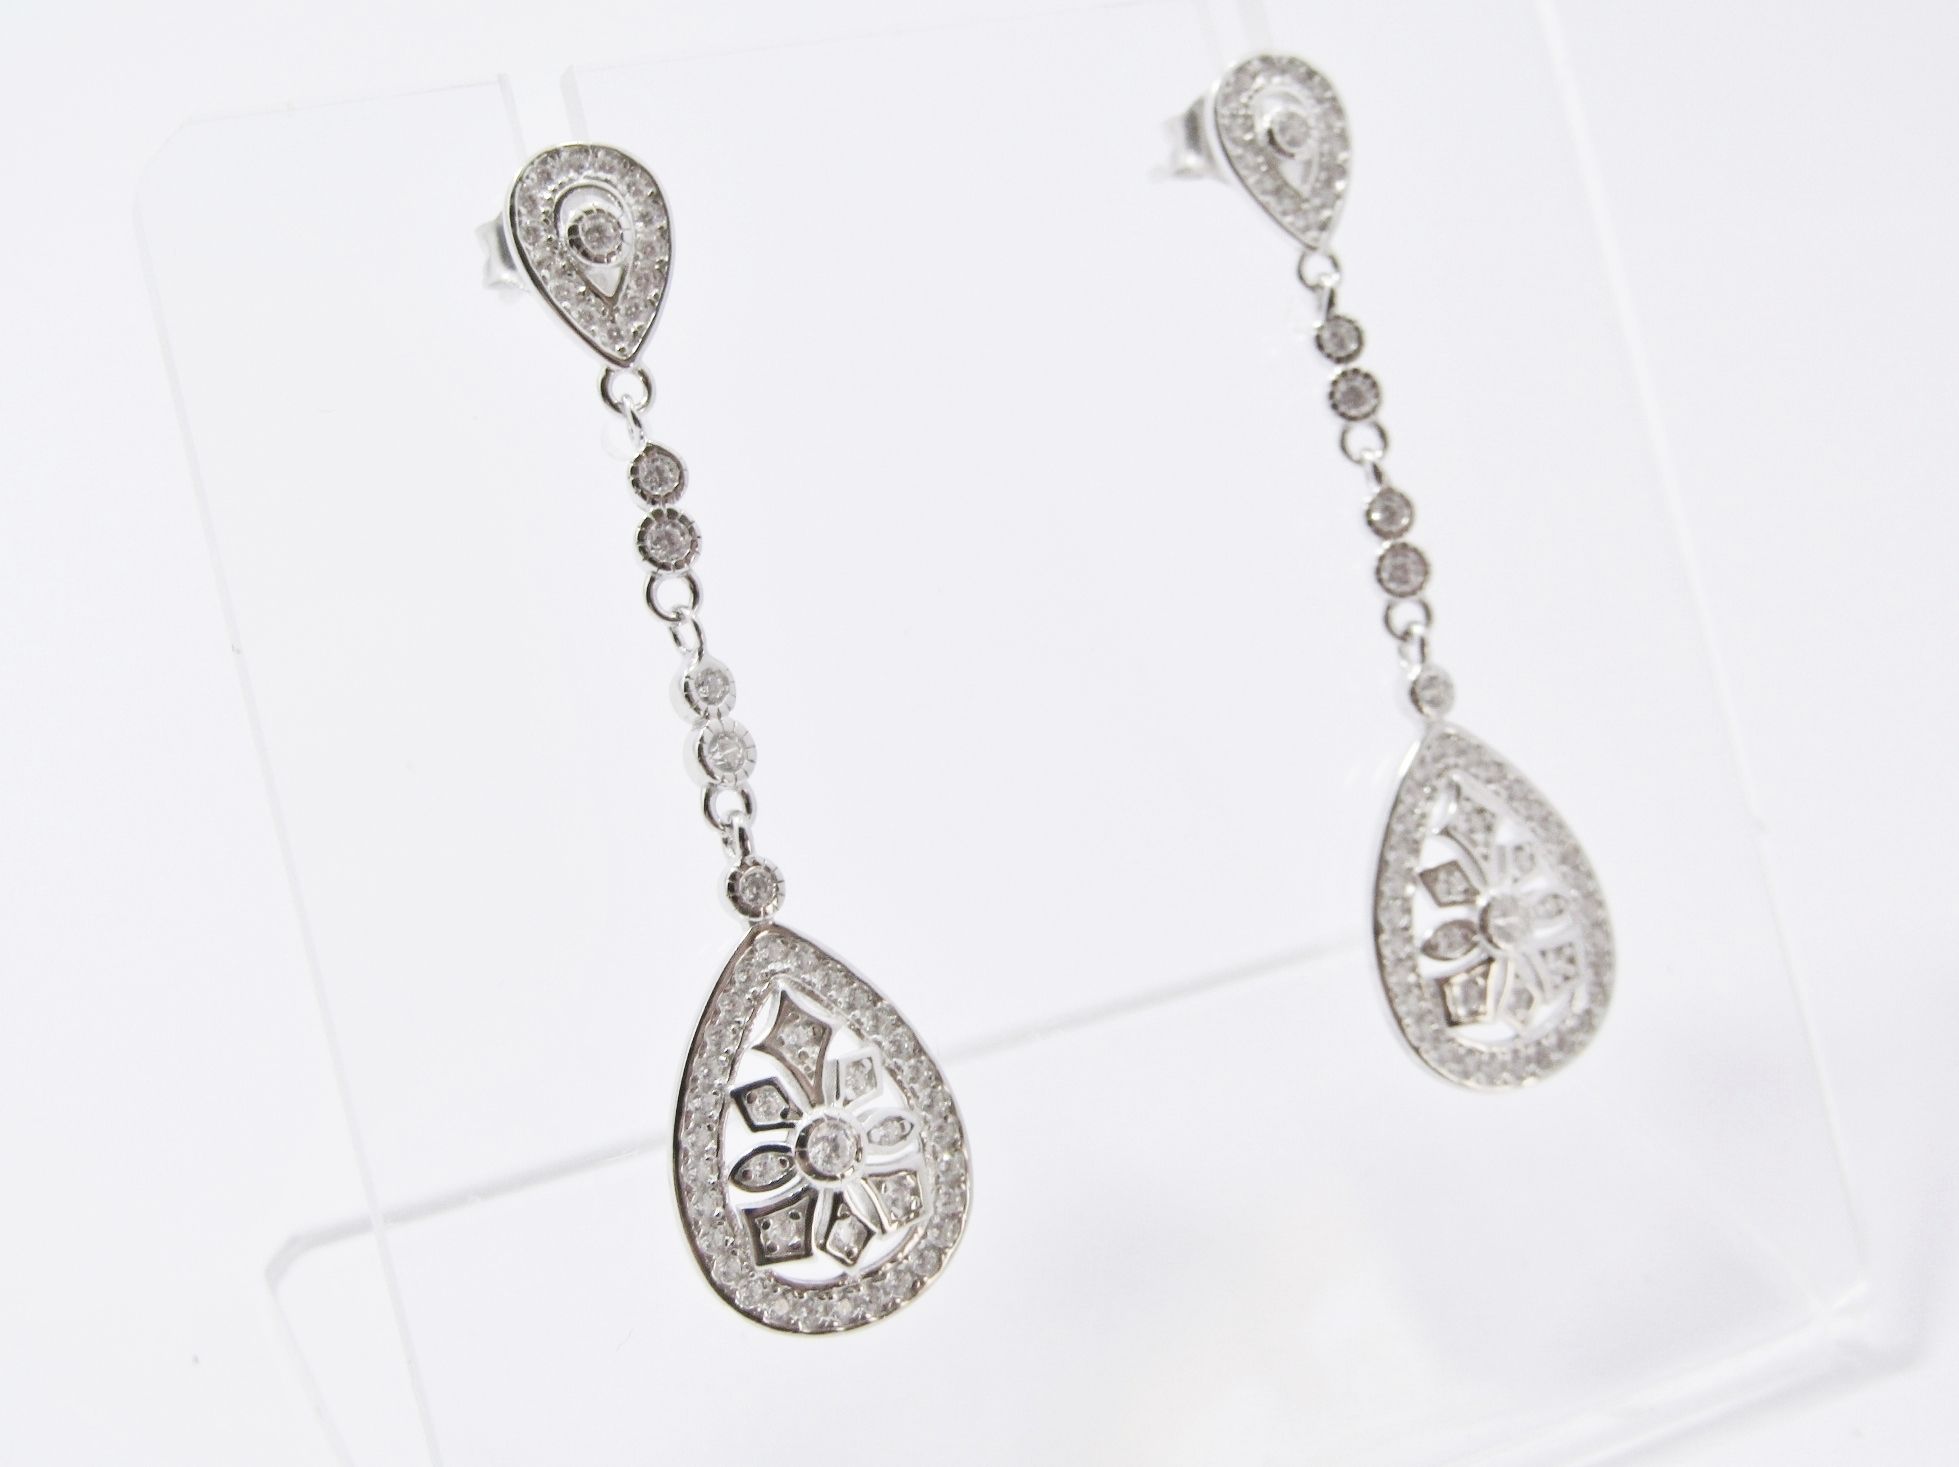 An Elegant pair of Zirconia Dangling Drop Earrings in Sterling Silver.